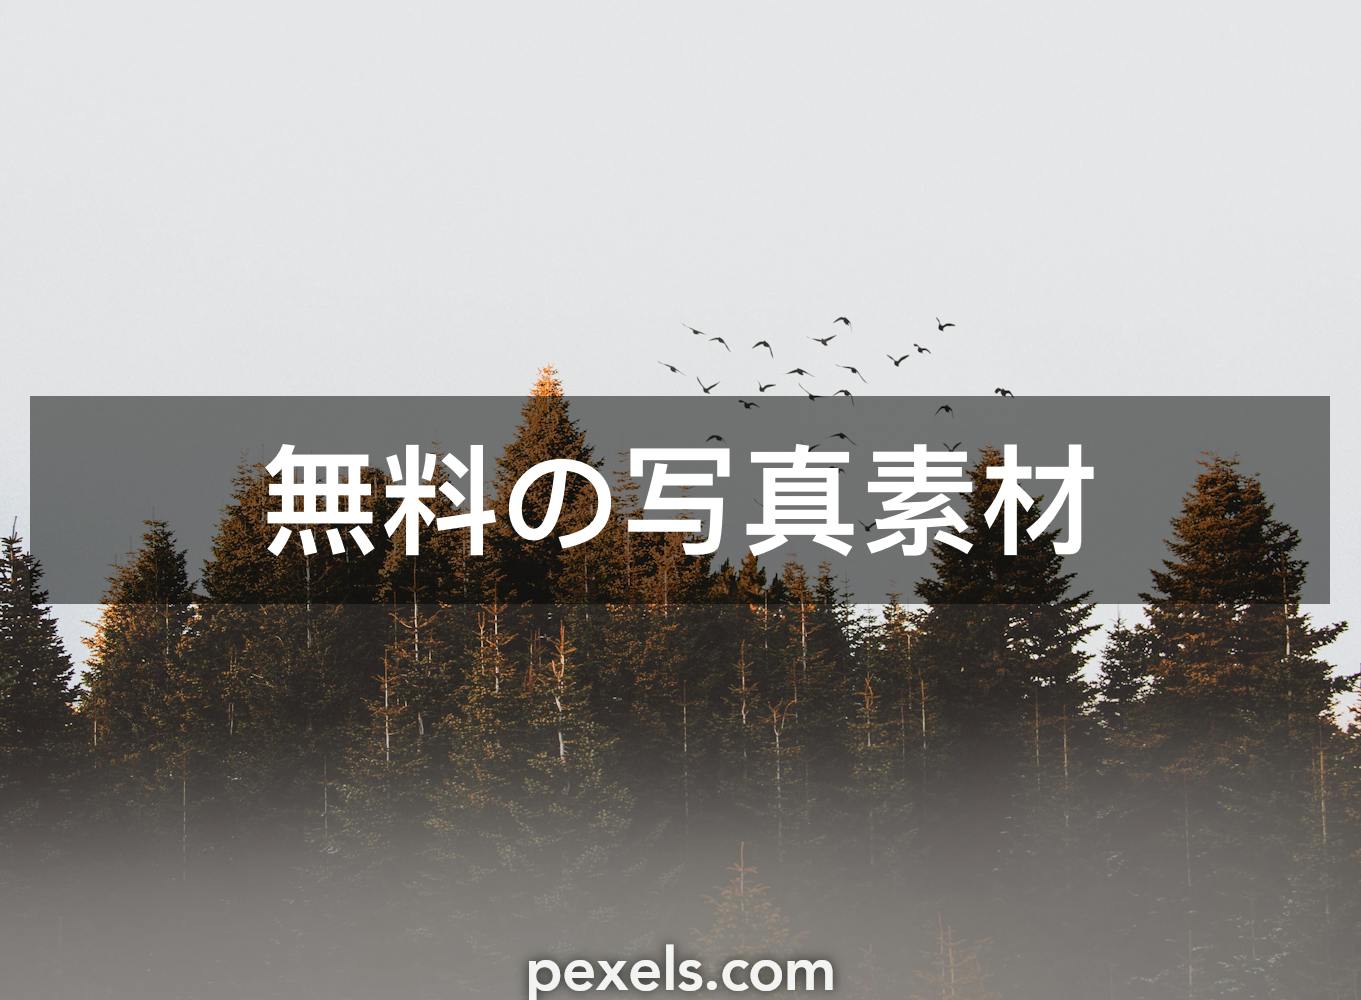 1000 Macの壁紙と一致する写真 Pexels 無料の写真素材